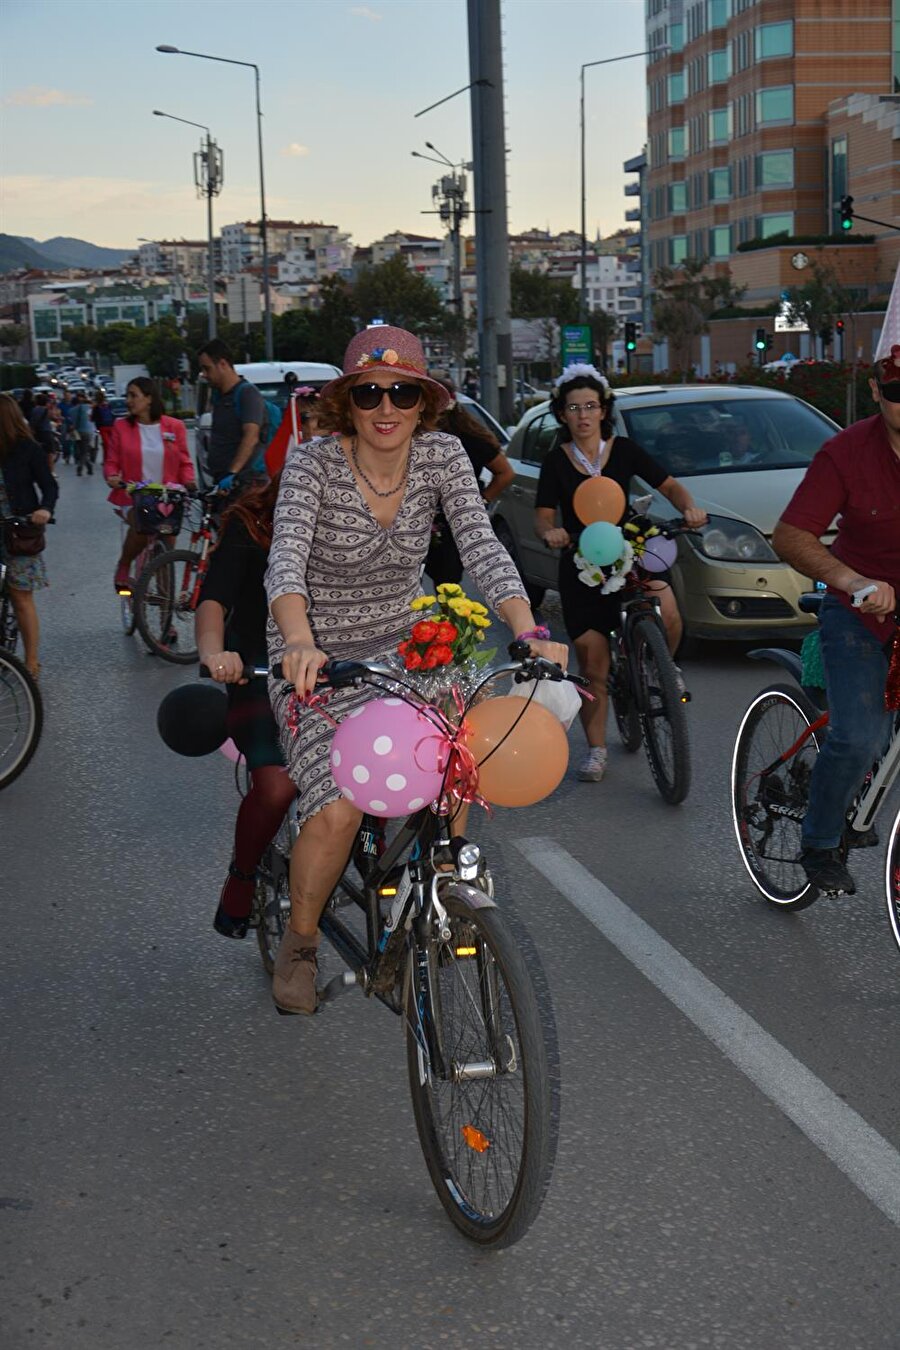 Bisikletler çiçek ve balonlarla süslendi
Dünya Otomobilsiz Kentler Günü kapsamında başlatılan etkinlik için Mersin'de merkez Yenişehir ilçesi Güvenevler Mahallesi kavşağında bir araya gelen çok sayıda kadın, bisikletlerini çiçek, balon ve çeşitli eşyalarla süsledi.